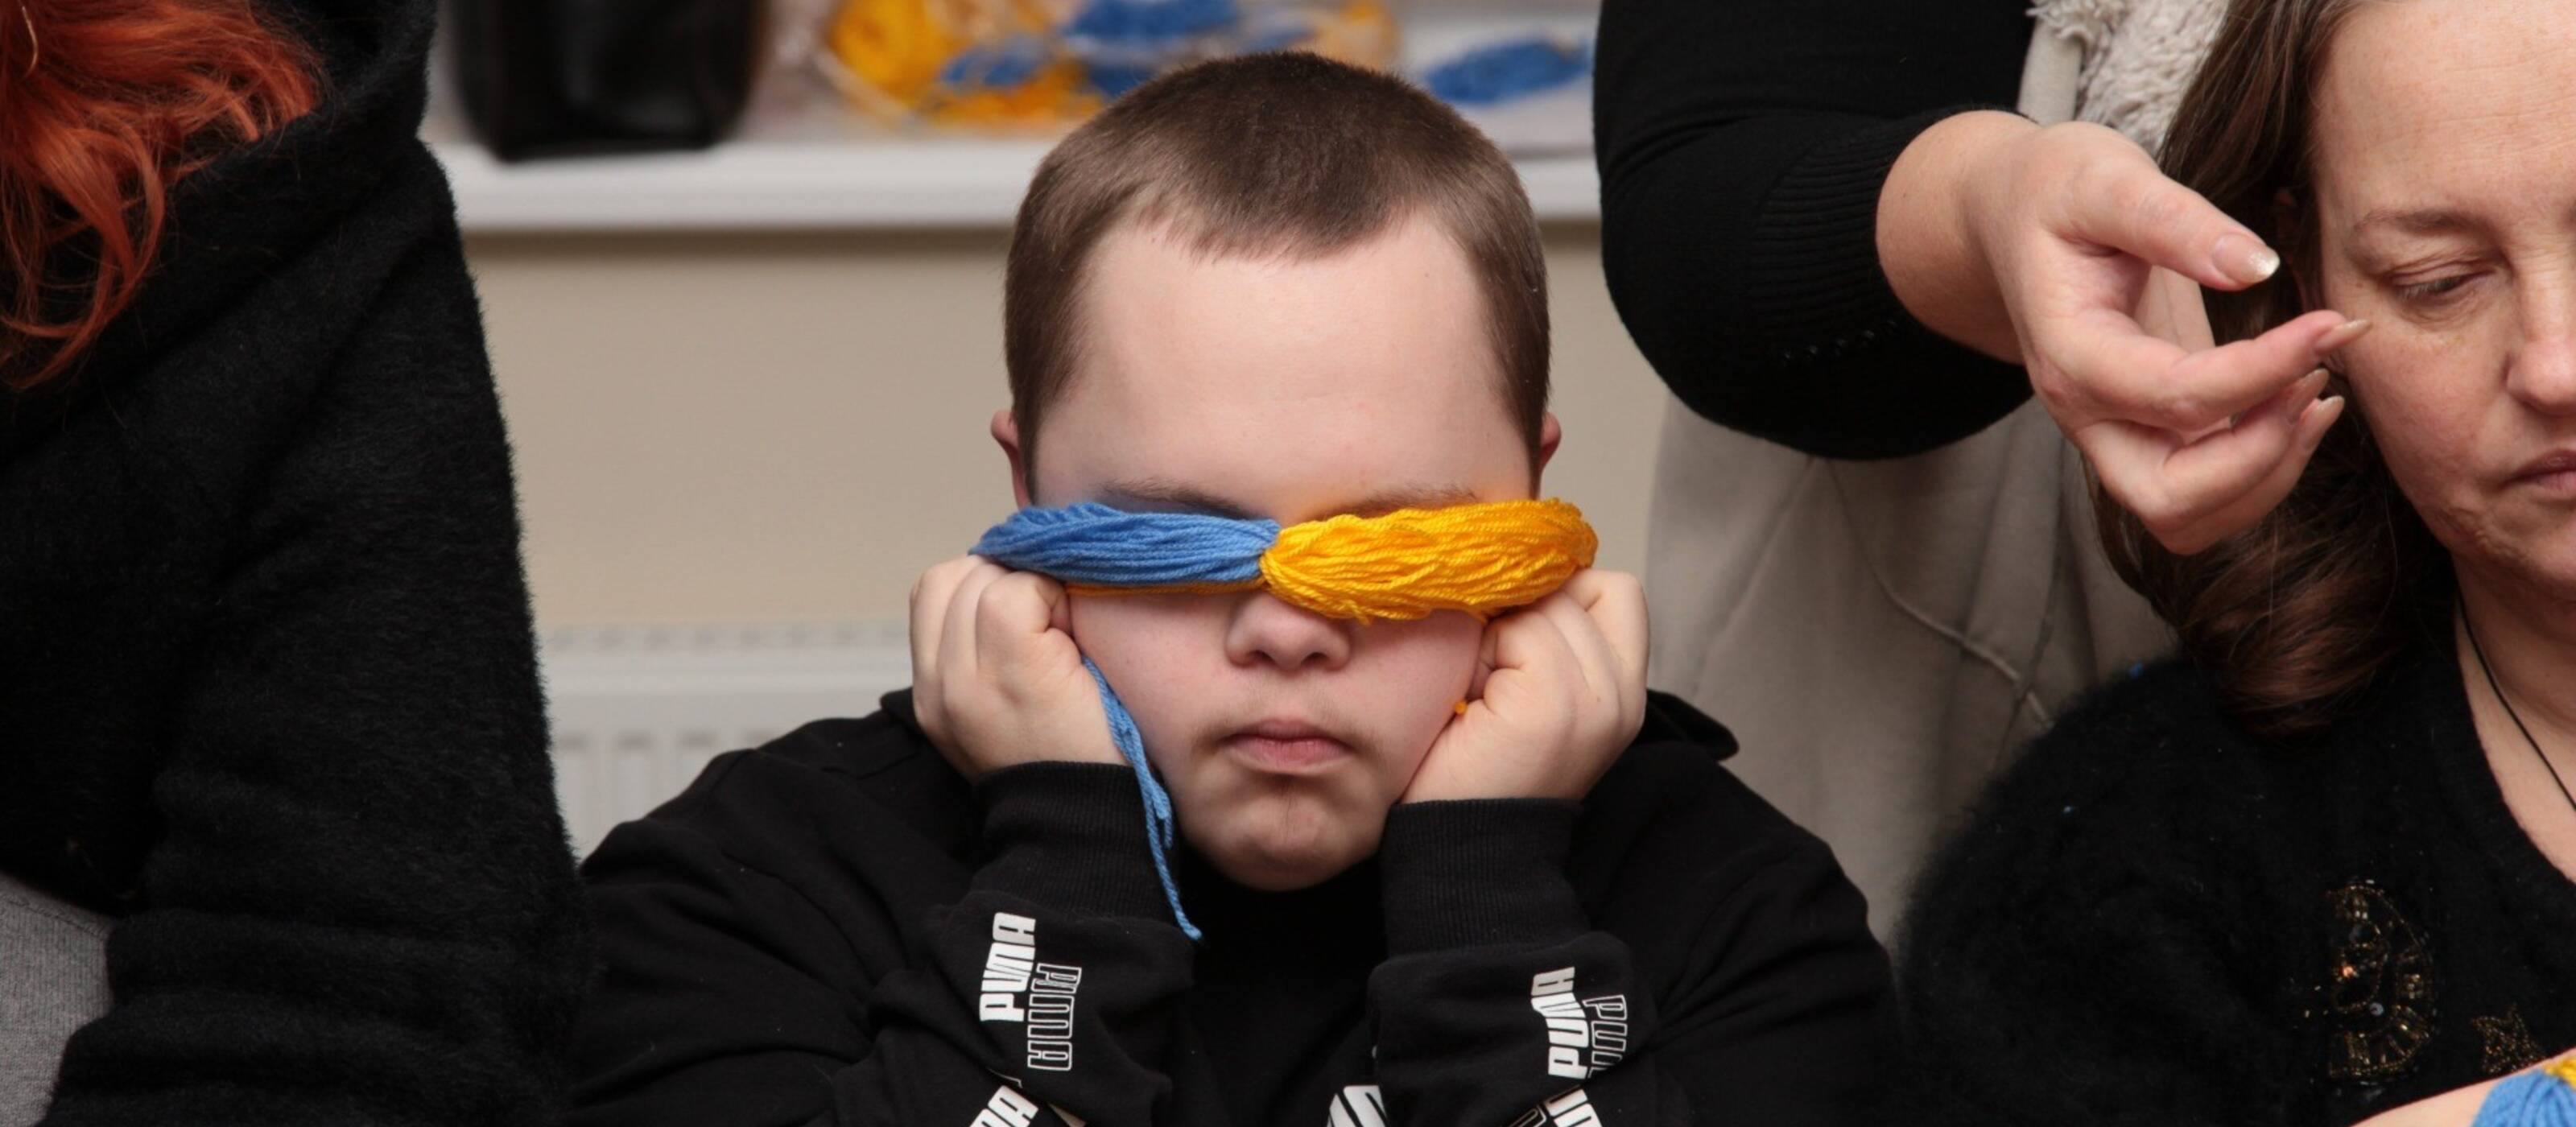 Des mères et leurs enfants en situation de handicap se rencontrent au centre Caritas de Kryvyï Rih. Elles aiment échanger et confectionner ensemble des poupées aux couleurs ukrainiennes. Ce garçon est particulièrement créatif.